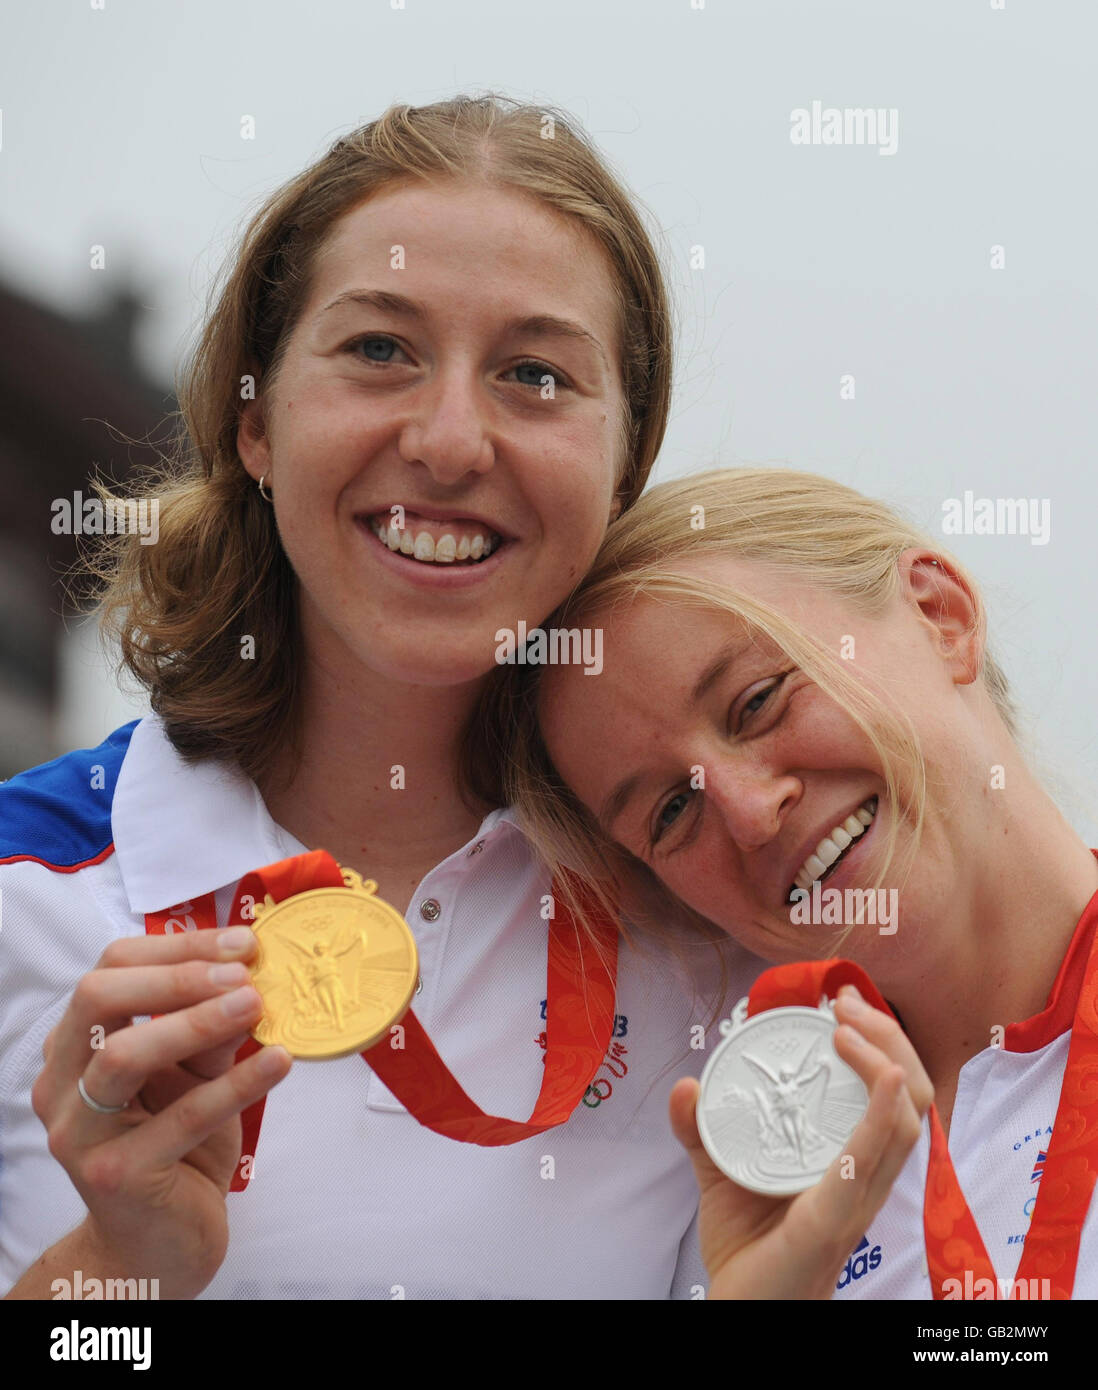 Die Medaillengewinnerin des britischen Radteams Nicole Cooke (links), die beim Olympischen Straßenrennen Gold gewann, und Emma Pooley mit der Silbermedaille gewann sie im Einzelzeitfahren der Frauen auf dem Radweg bei den Olympischen Spielen in Peking 2008 in China. Stockfoto